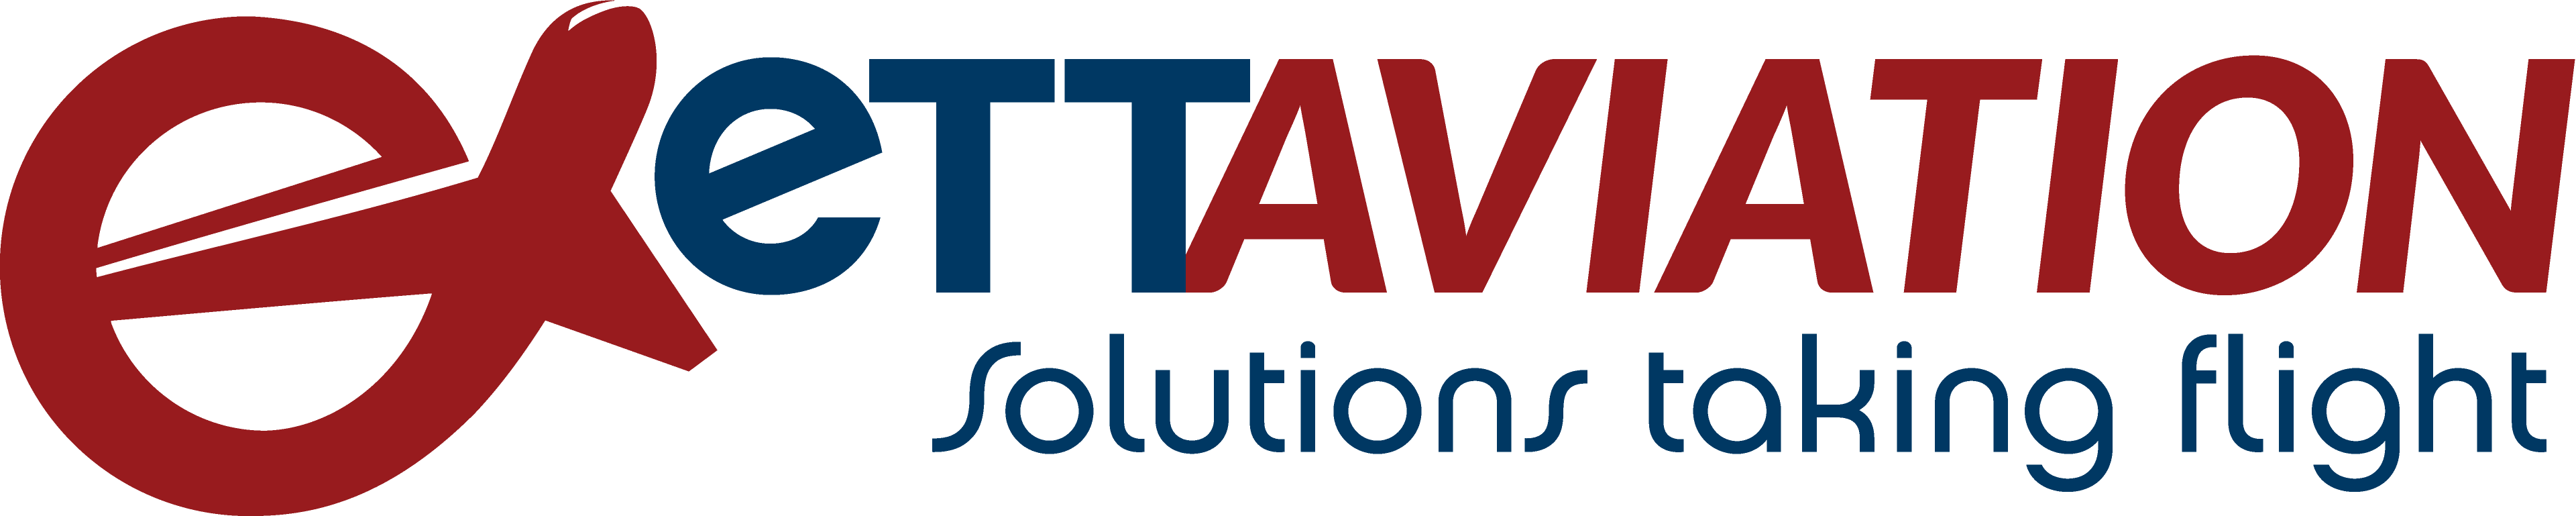 eTT Aviation Logo